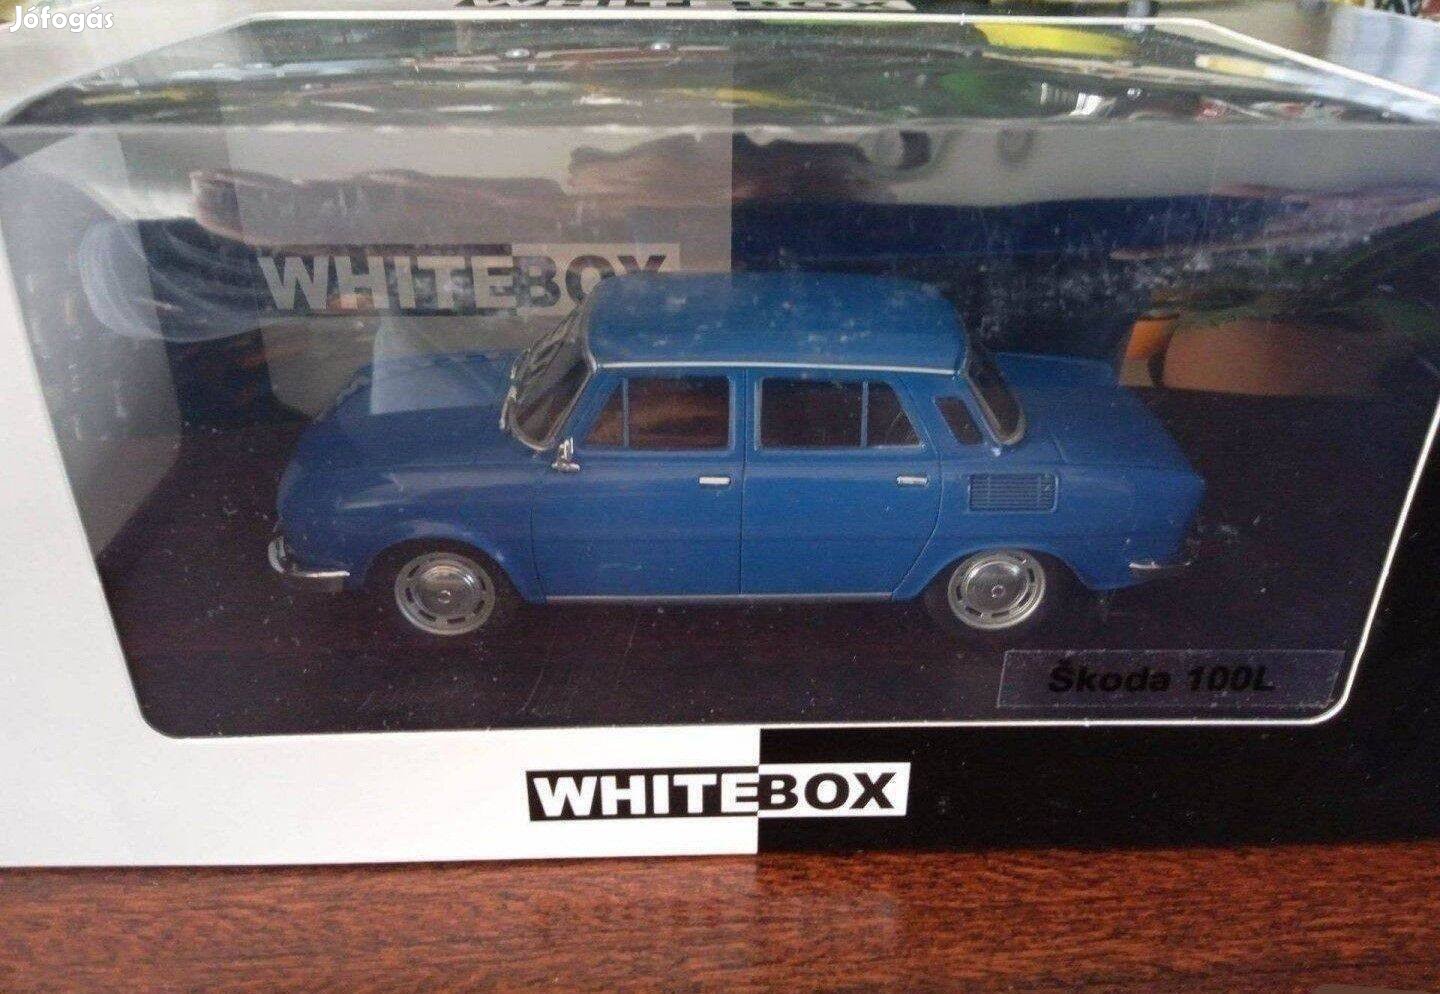 Skoda 100L White-Box kisauto modell 1/24 Eladó